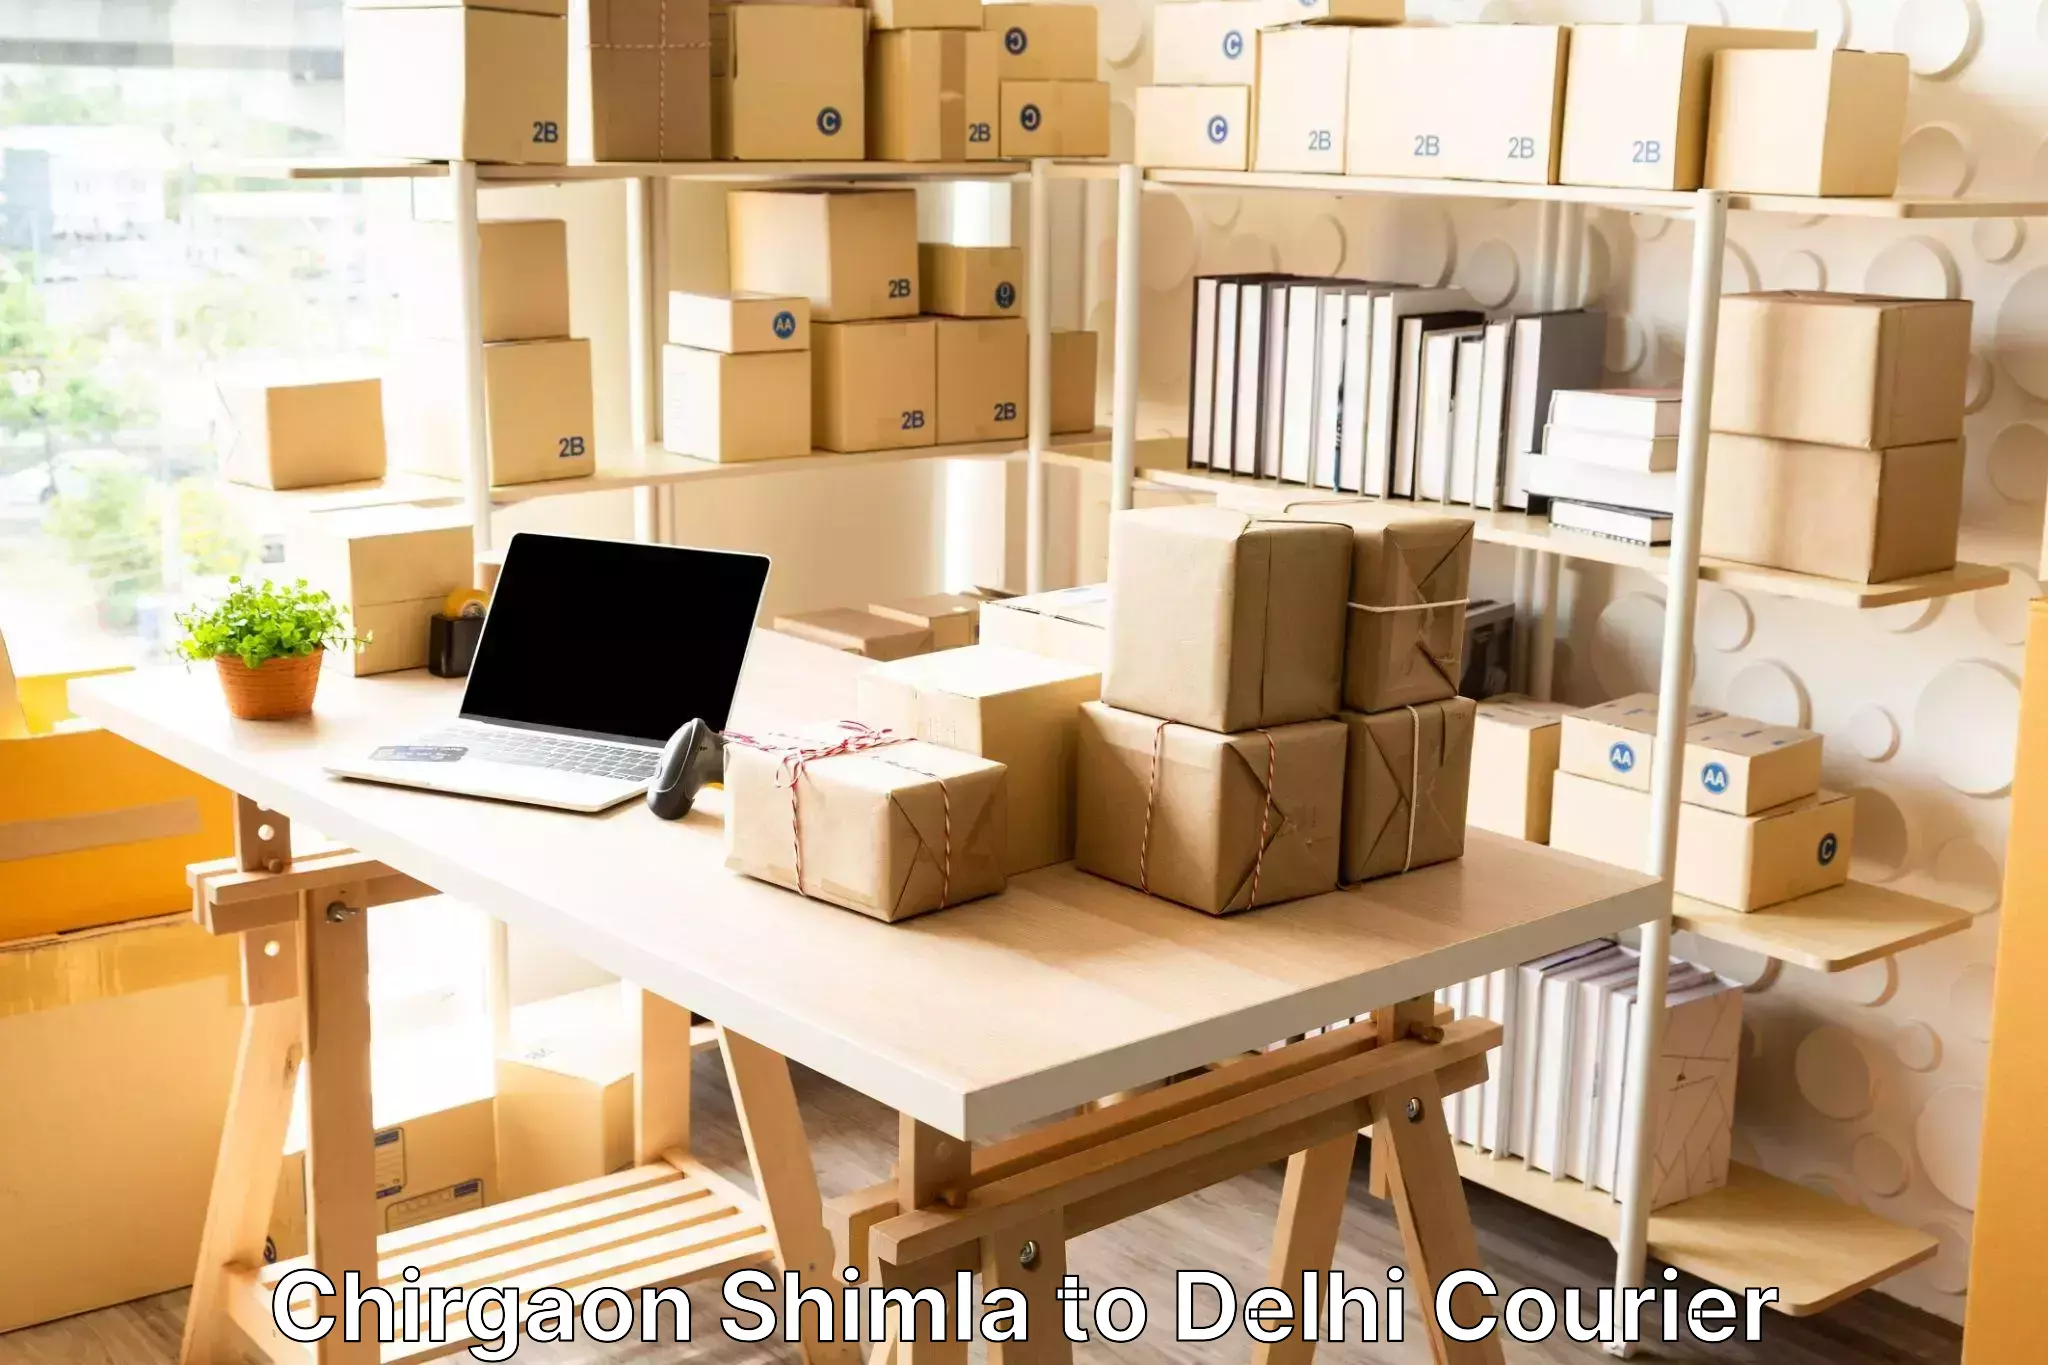 Luggage delivery app Chirgaon Shimla to Ashok Vihar